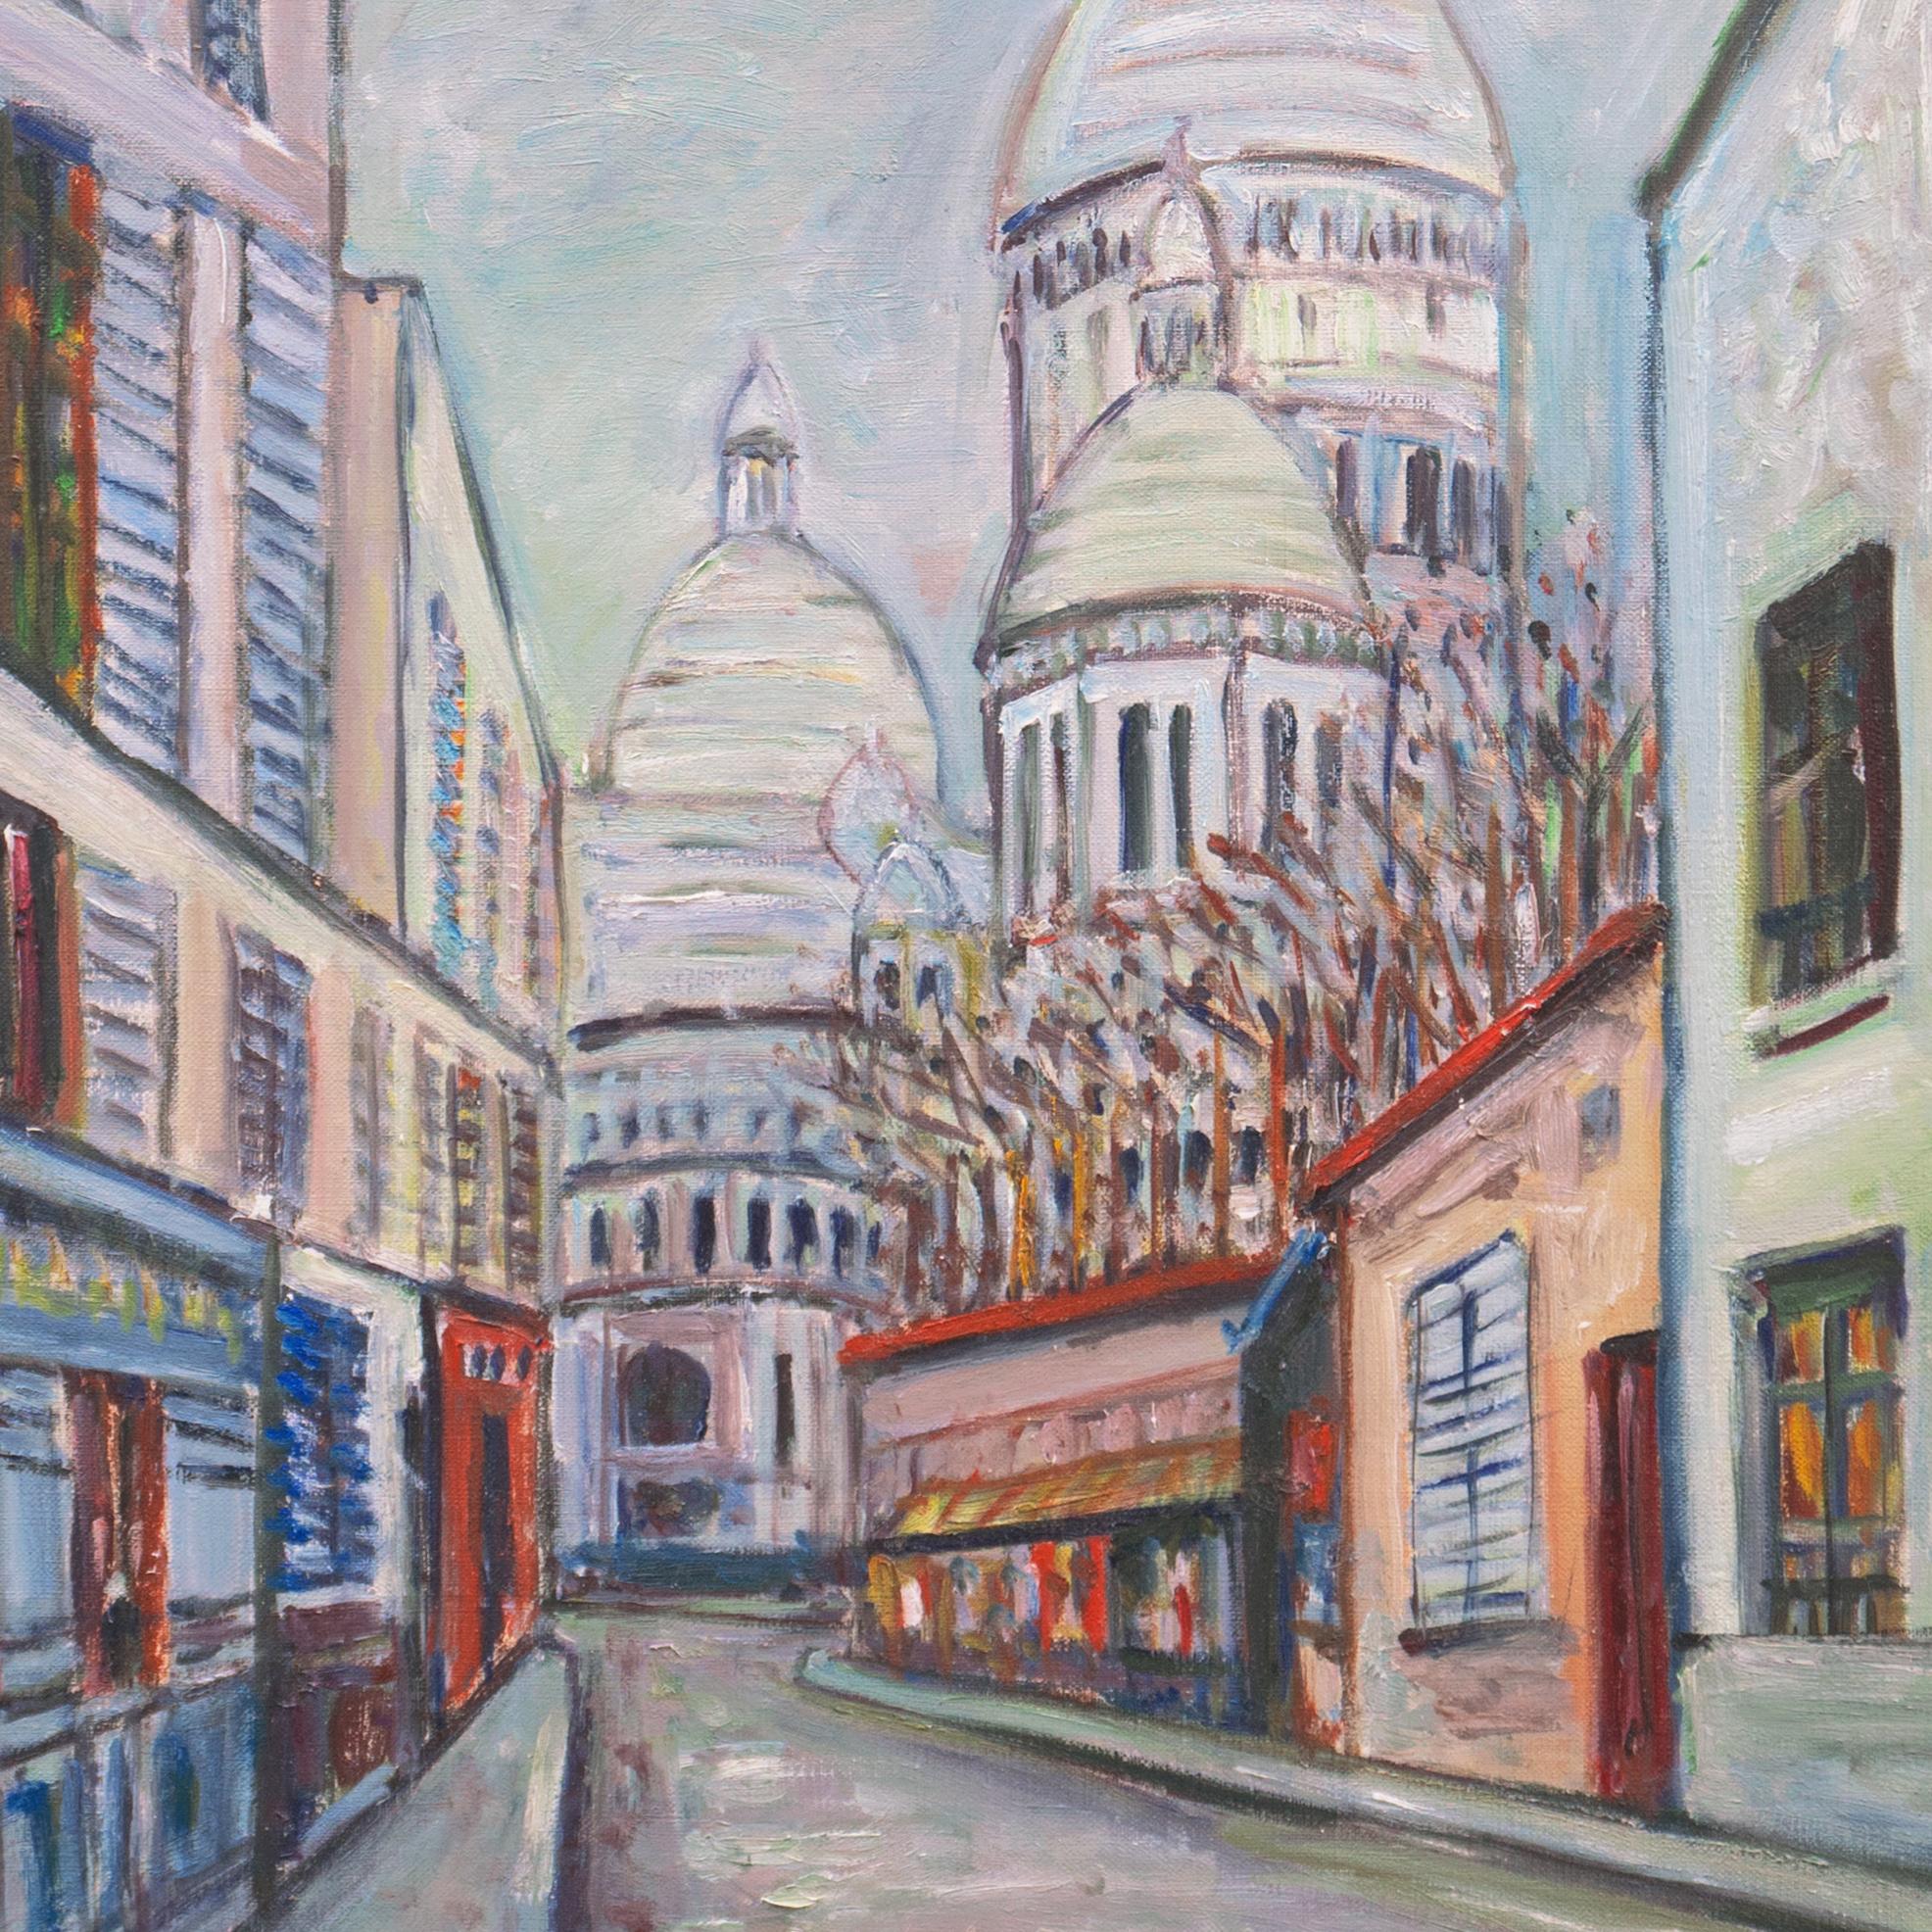 'View of Montmartre with the Basilica of Sacré-Cœur', Paris, Post Impressionism - Gray Landscape Painting by K.H. Kaneko